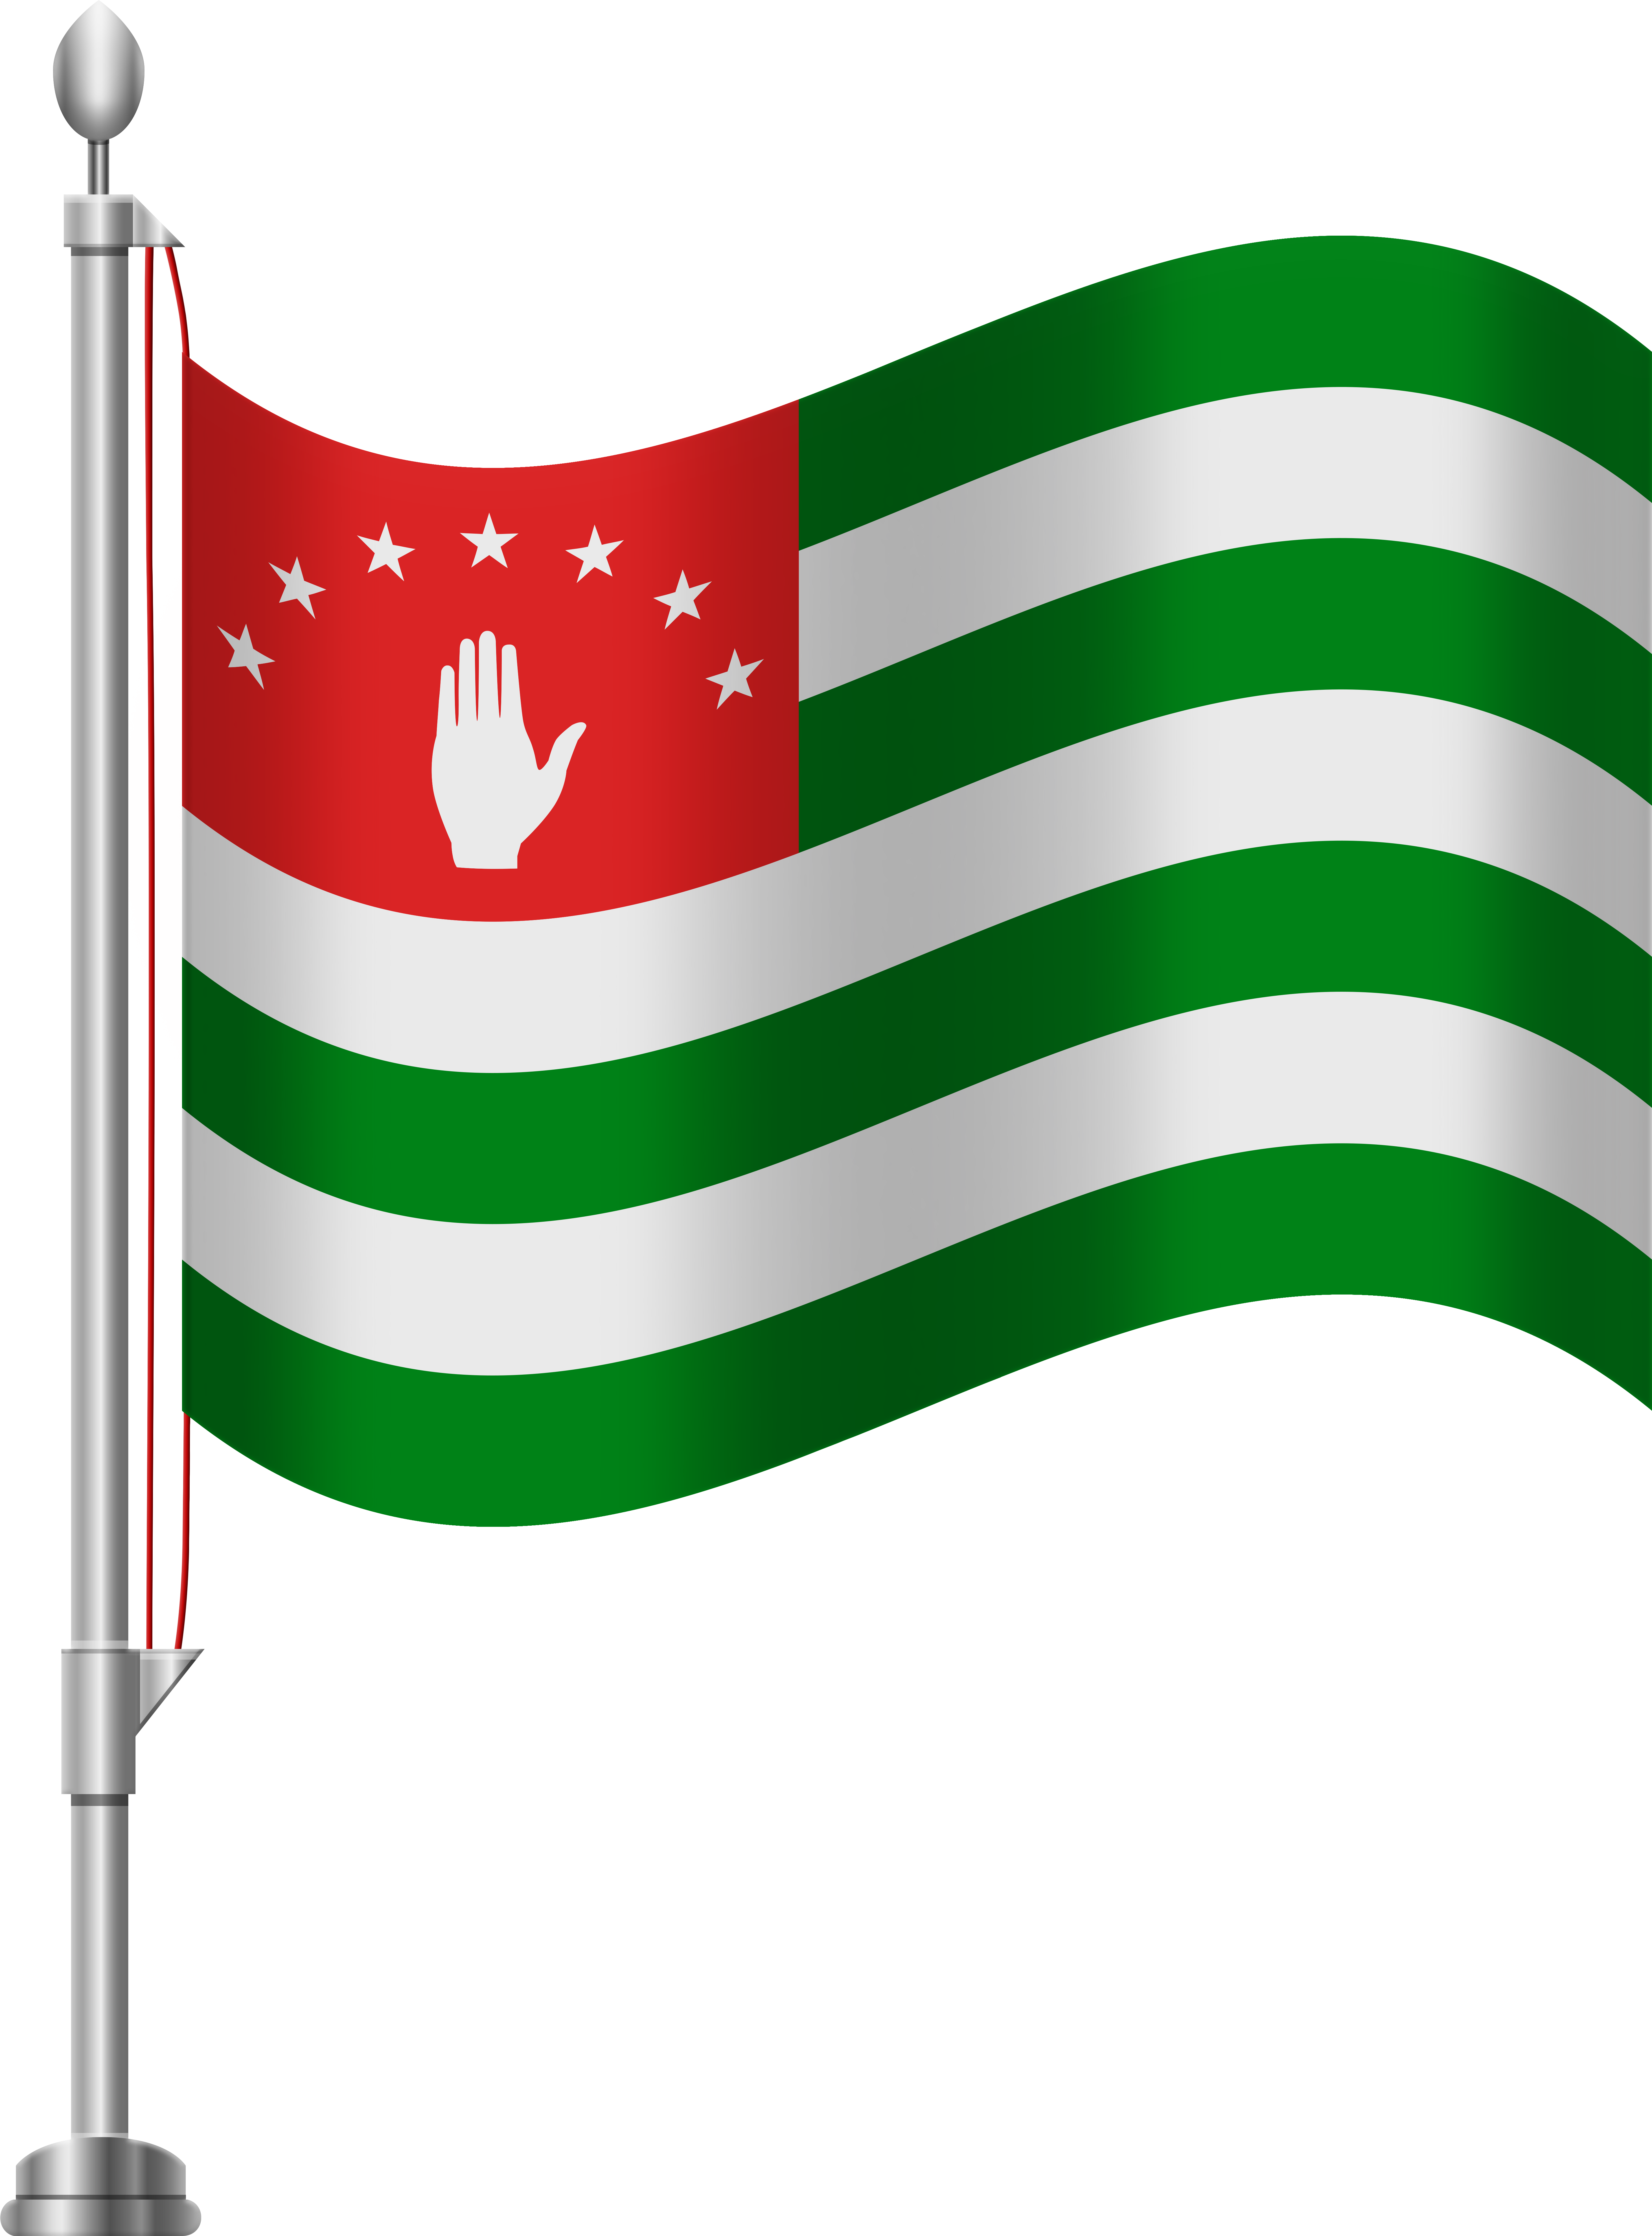 Abkhazia Flagon Pole